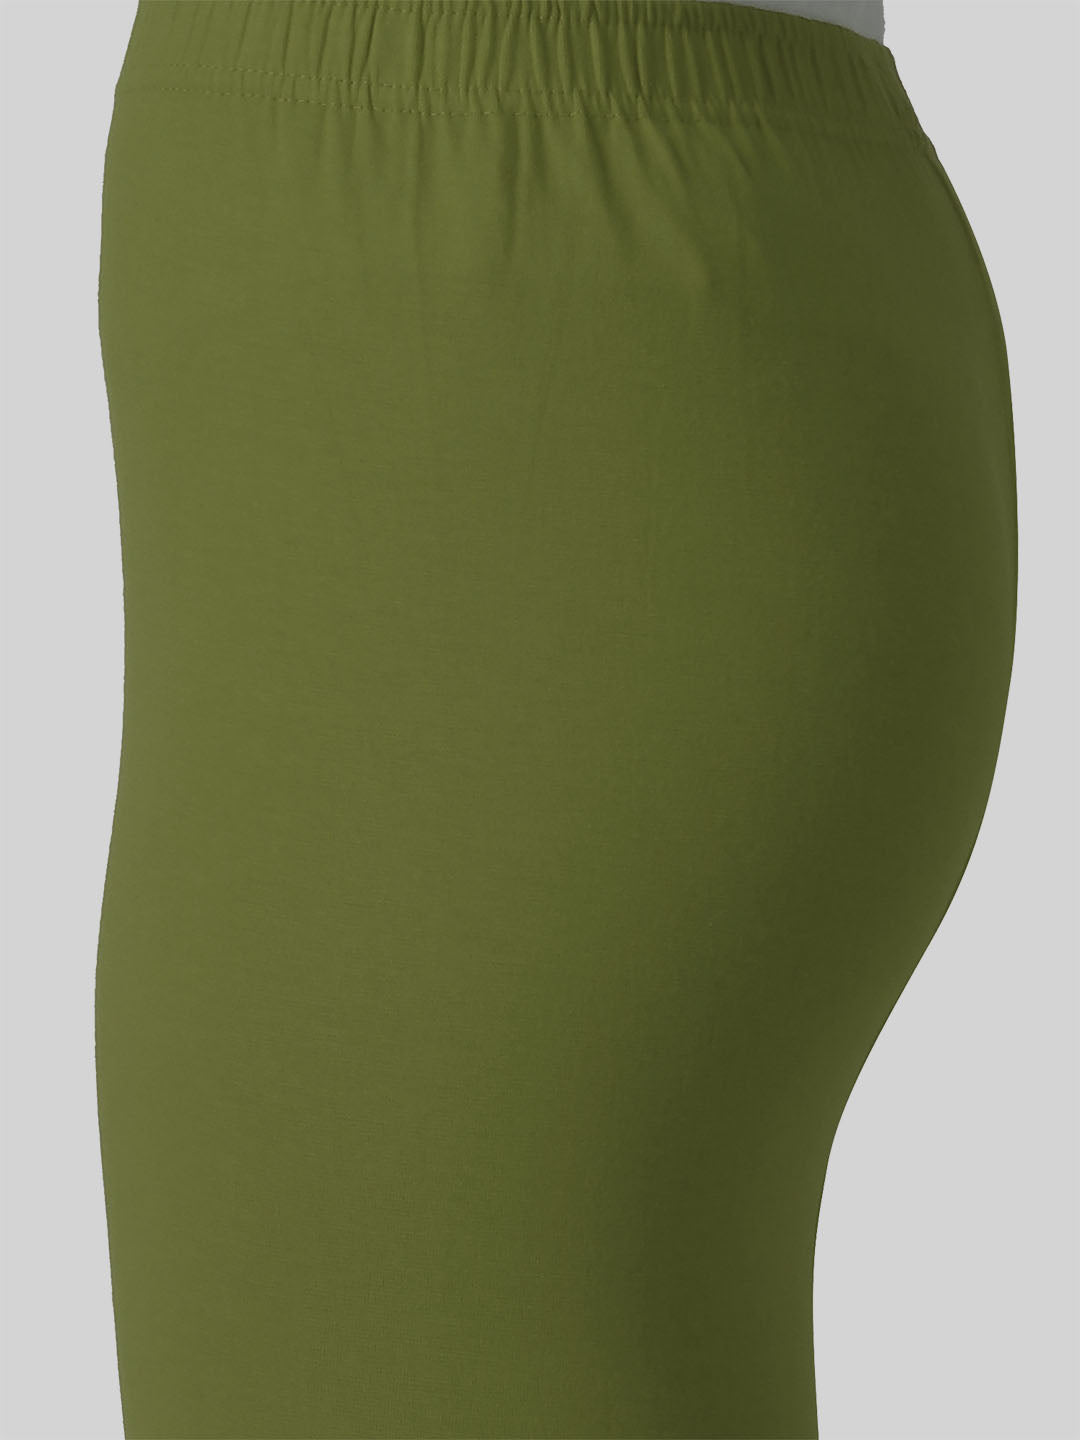 Saundarya Women's Olive Green Ankle Length Leggings Cotton